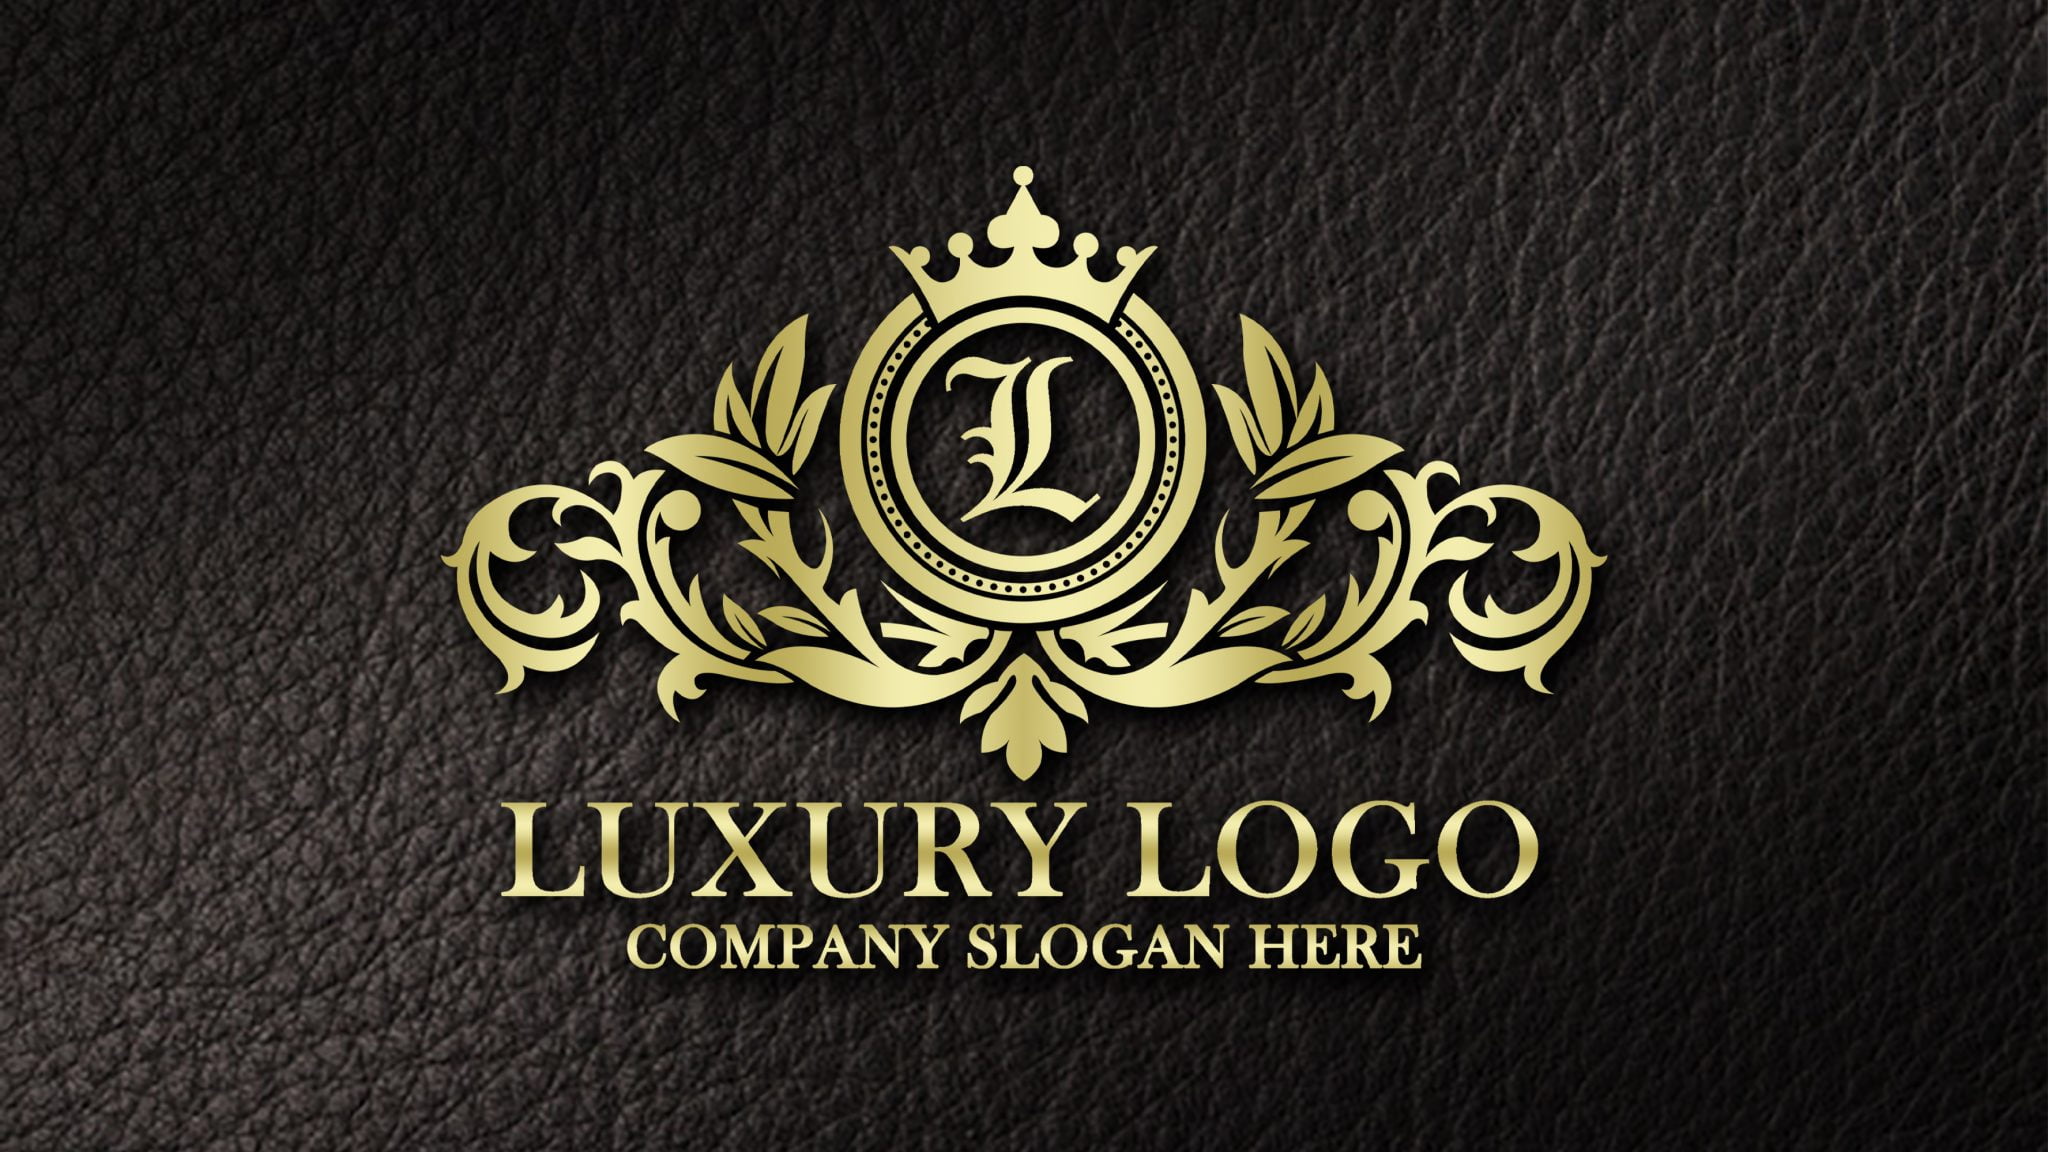 logos free download